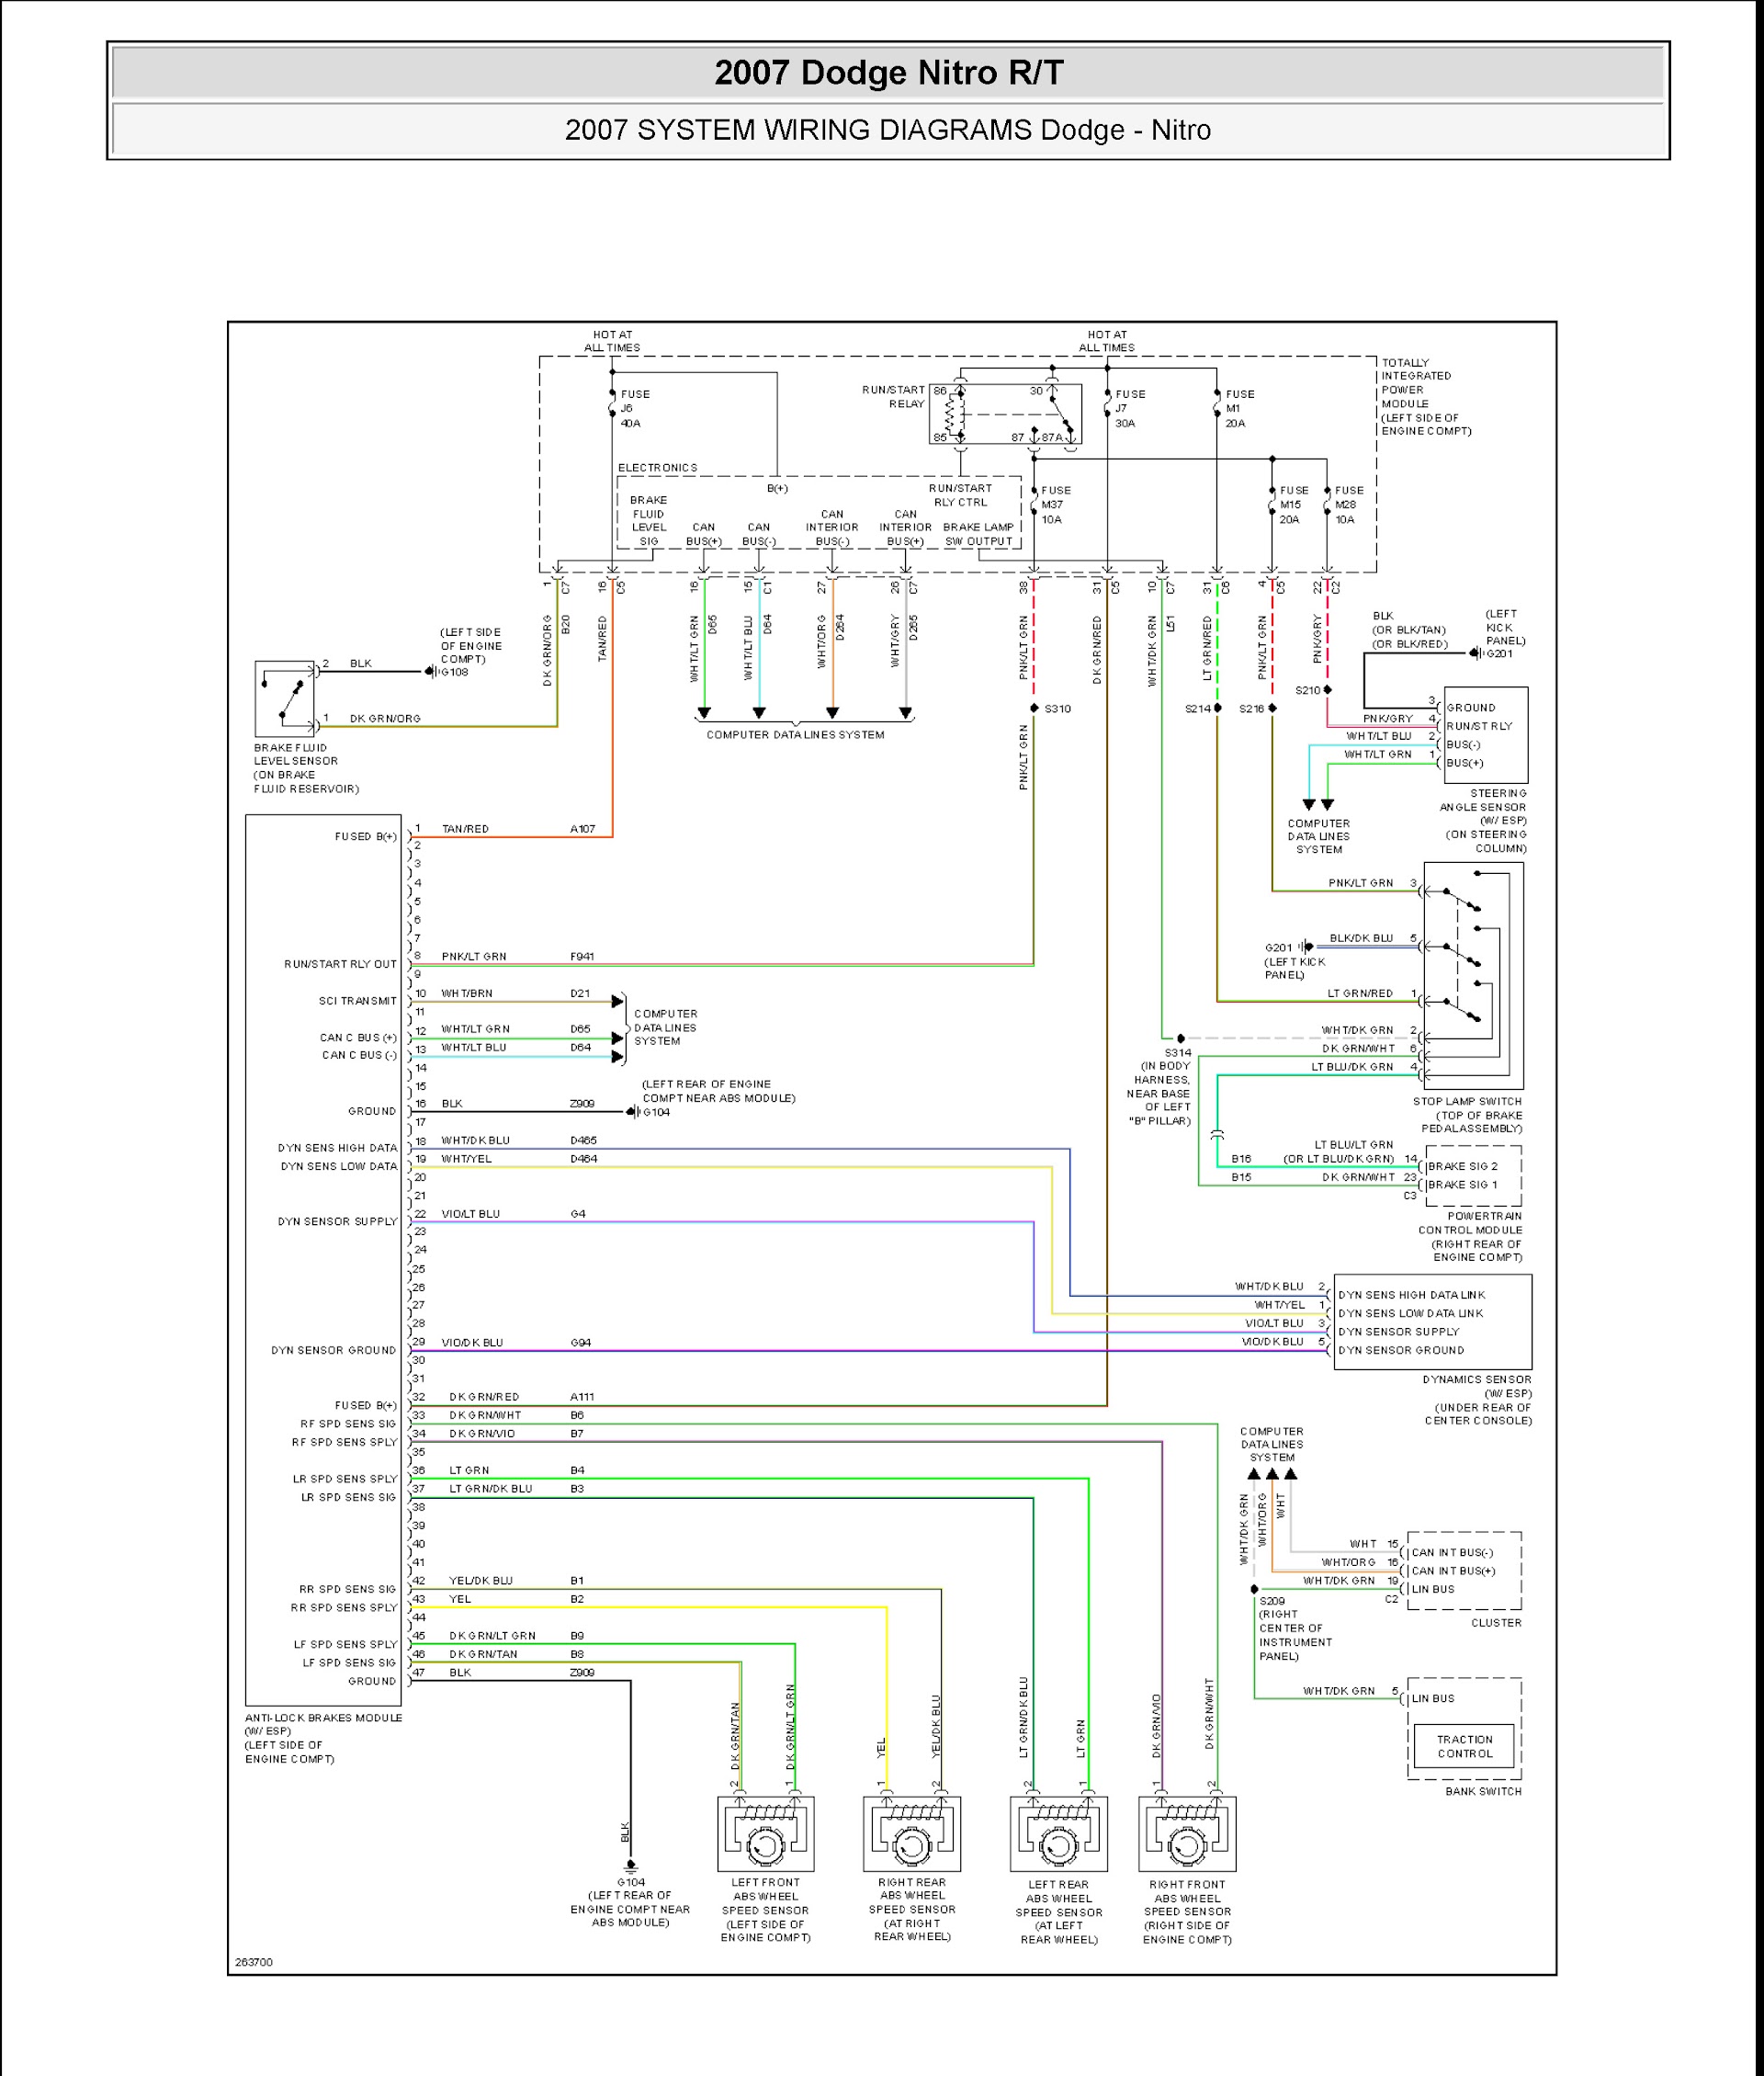 2007 Dodge Nitro R/T Repair Manual, wiring diagram